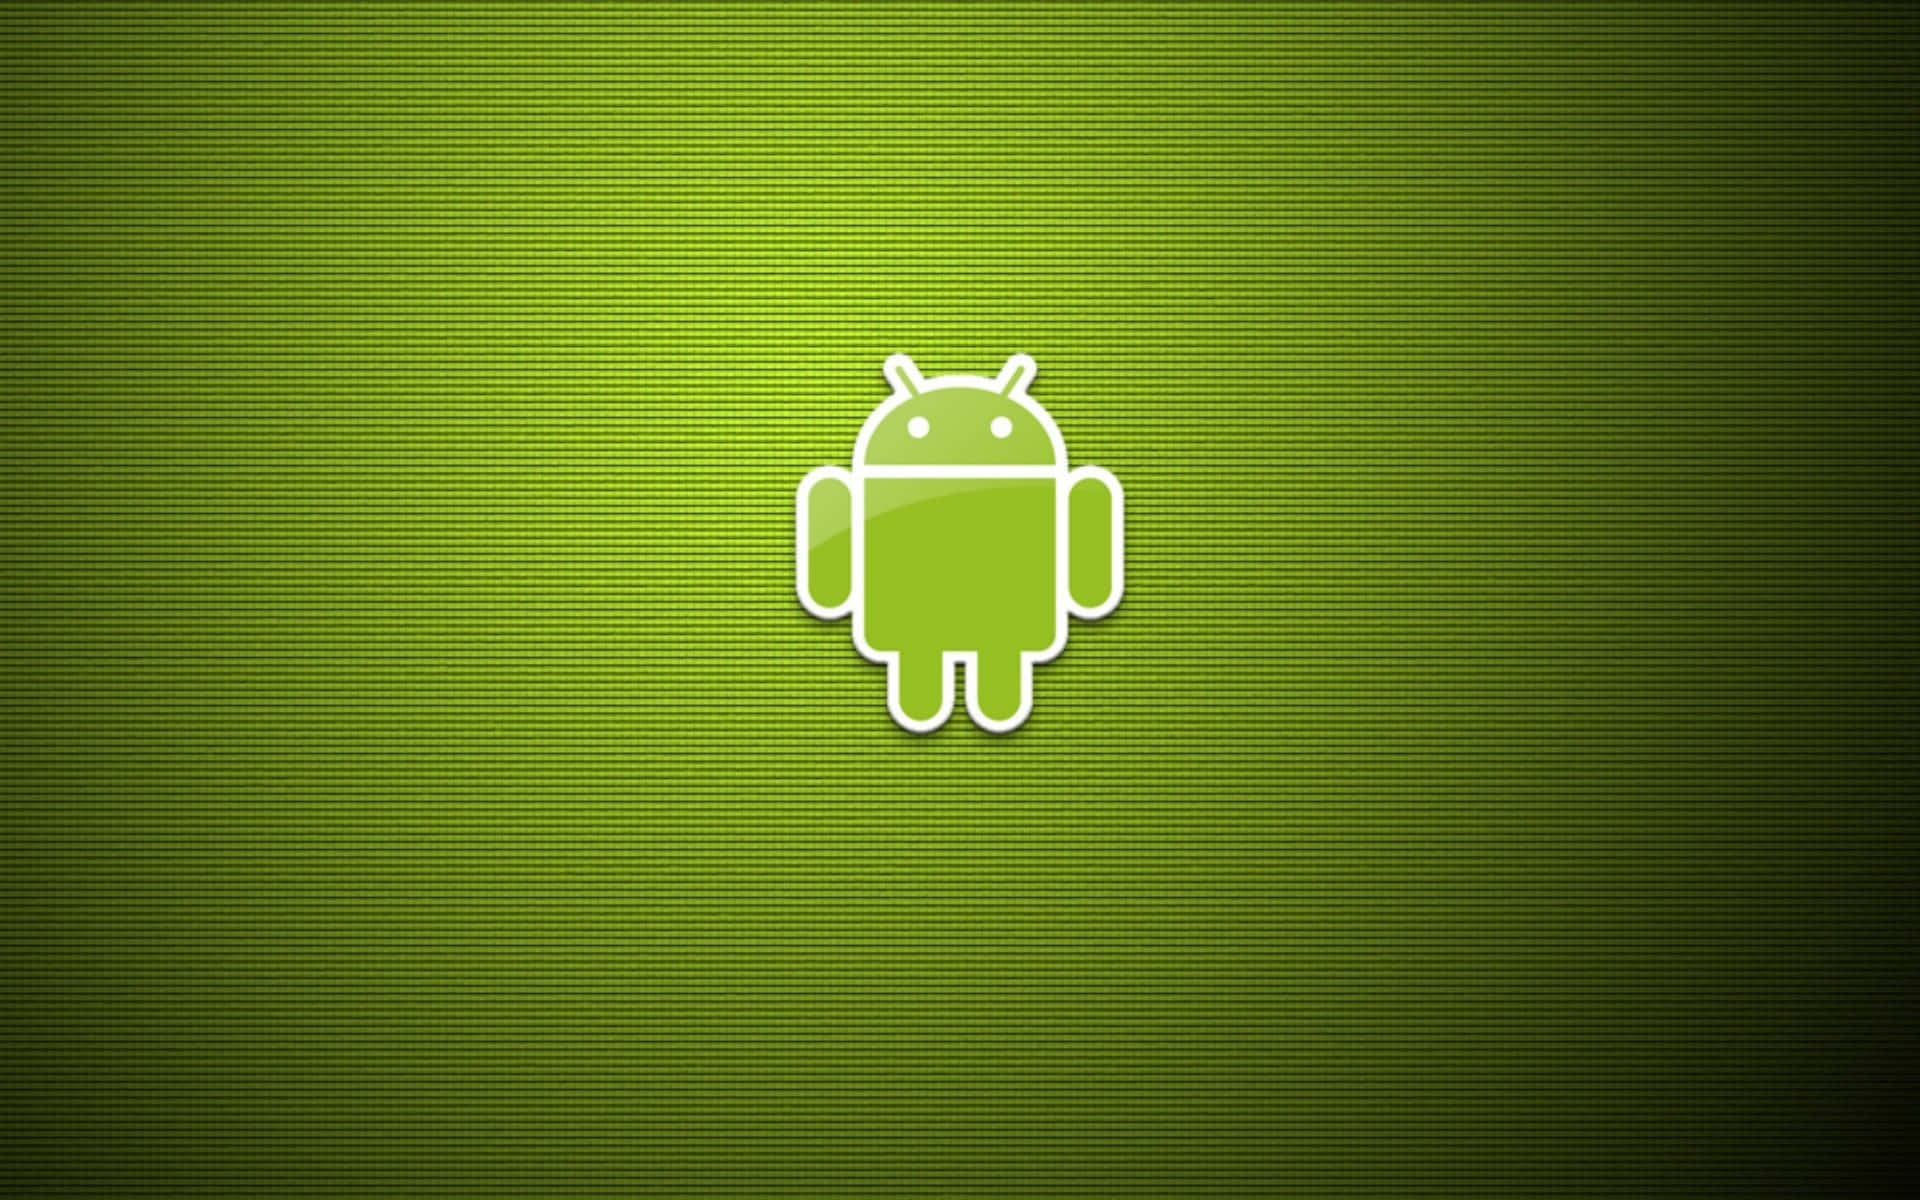 Androidhintergrundbilder Hd-hintergrundbilder Hd-hintergrundbilder